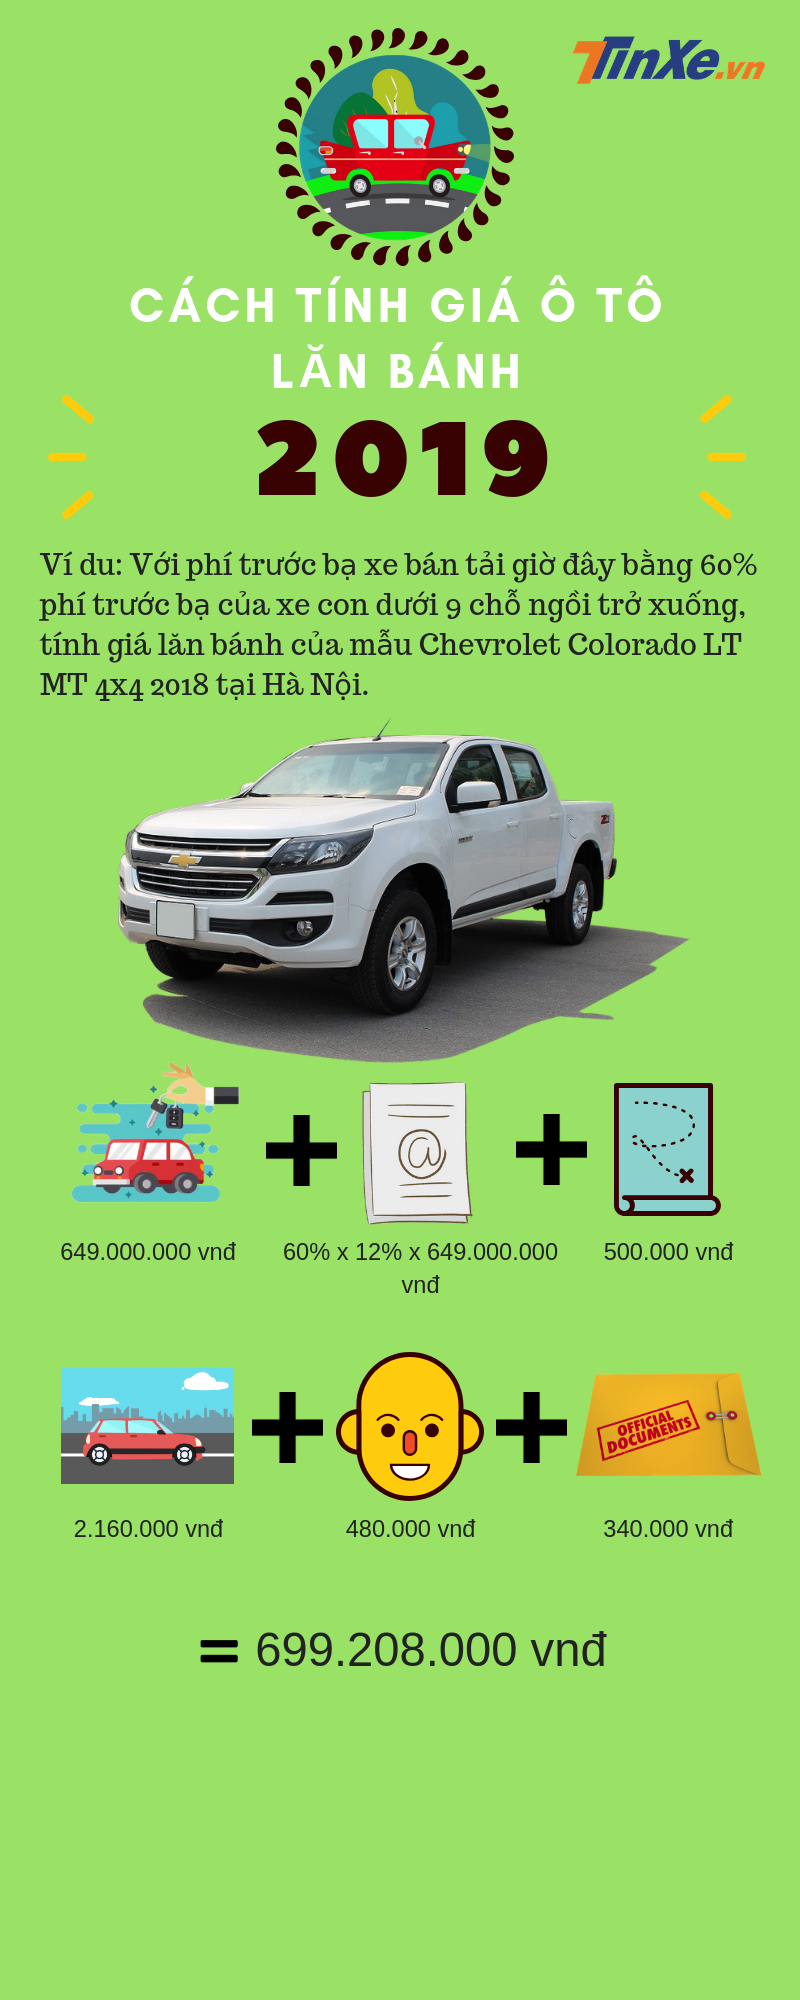 Ví dụ tính giá lăn bánh Chevrolet Colorado LT MT 4x4 tại Hà Nội